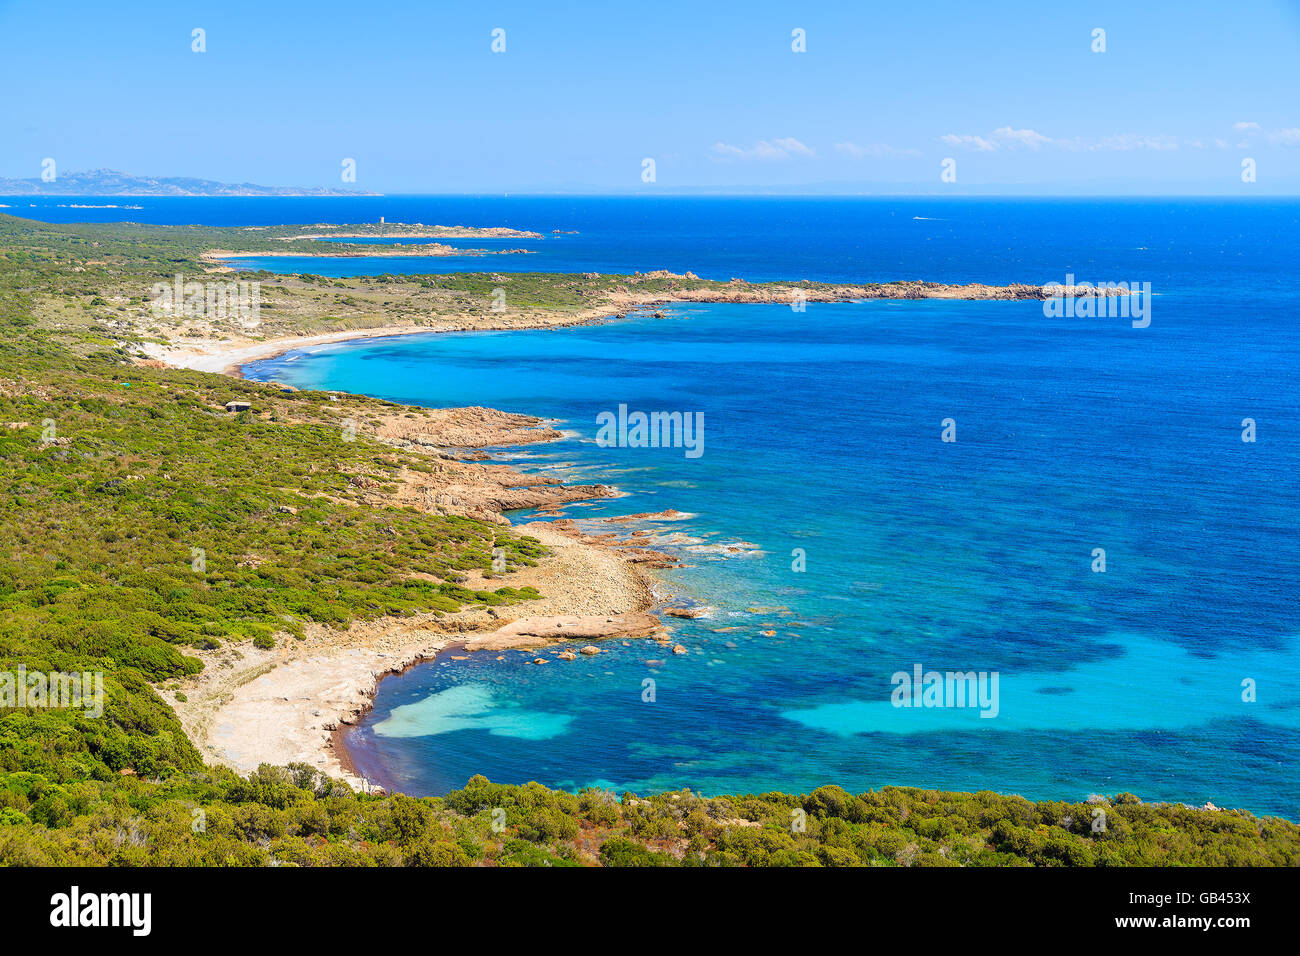 Una vista della bellissima spiaggia appartata e mare blu sulla costa della Corsica, Francia Foto Stock